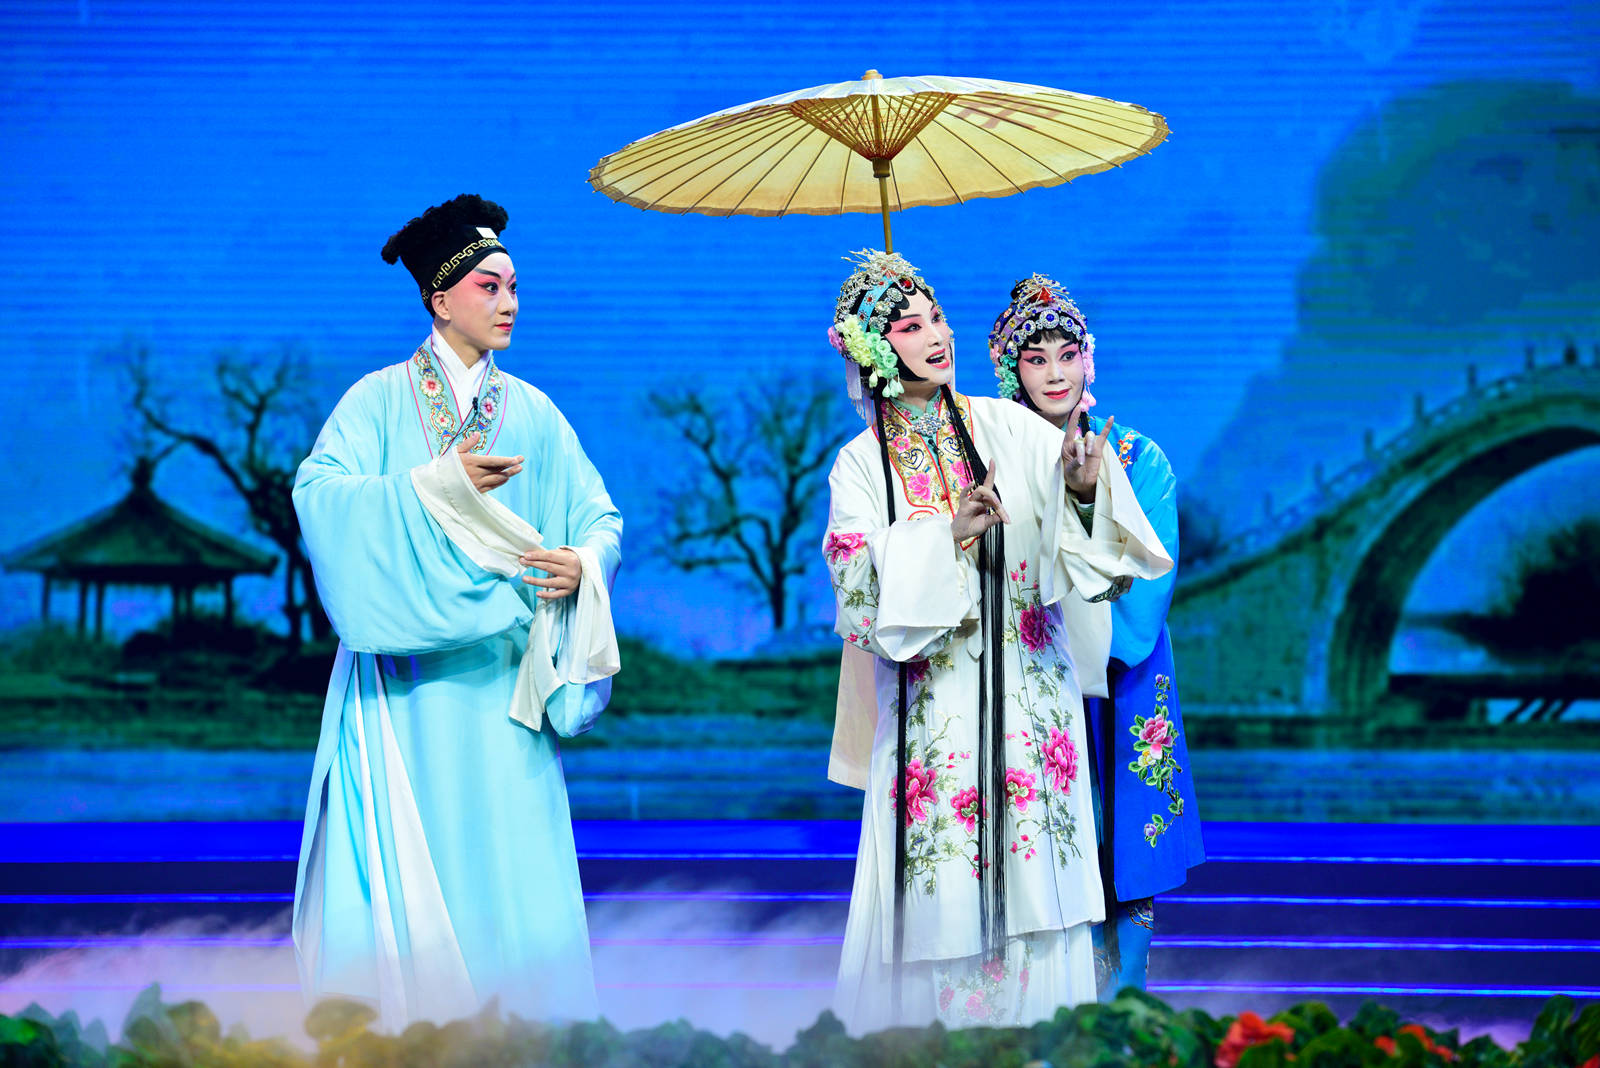 分享一组最近拍的京剧白蛇传游湖央视空中剧院现场演出